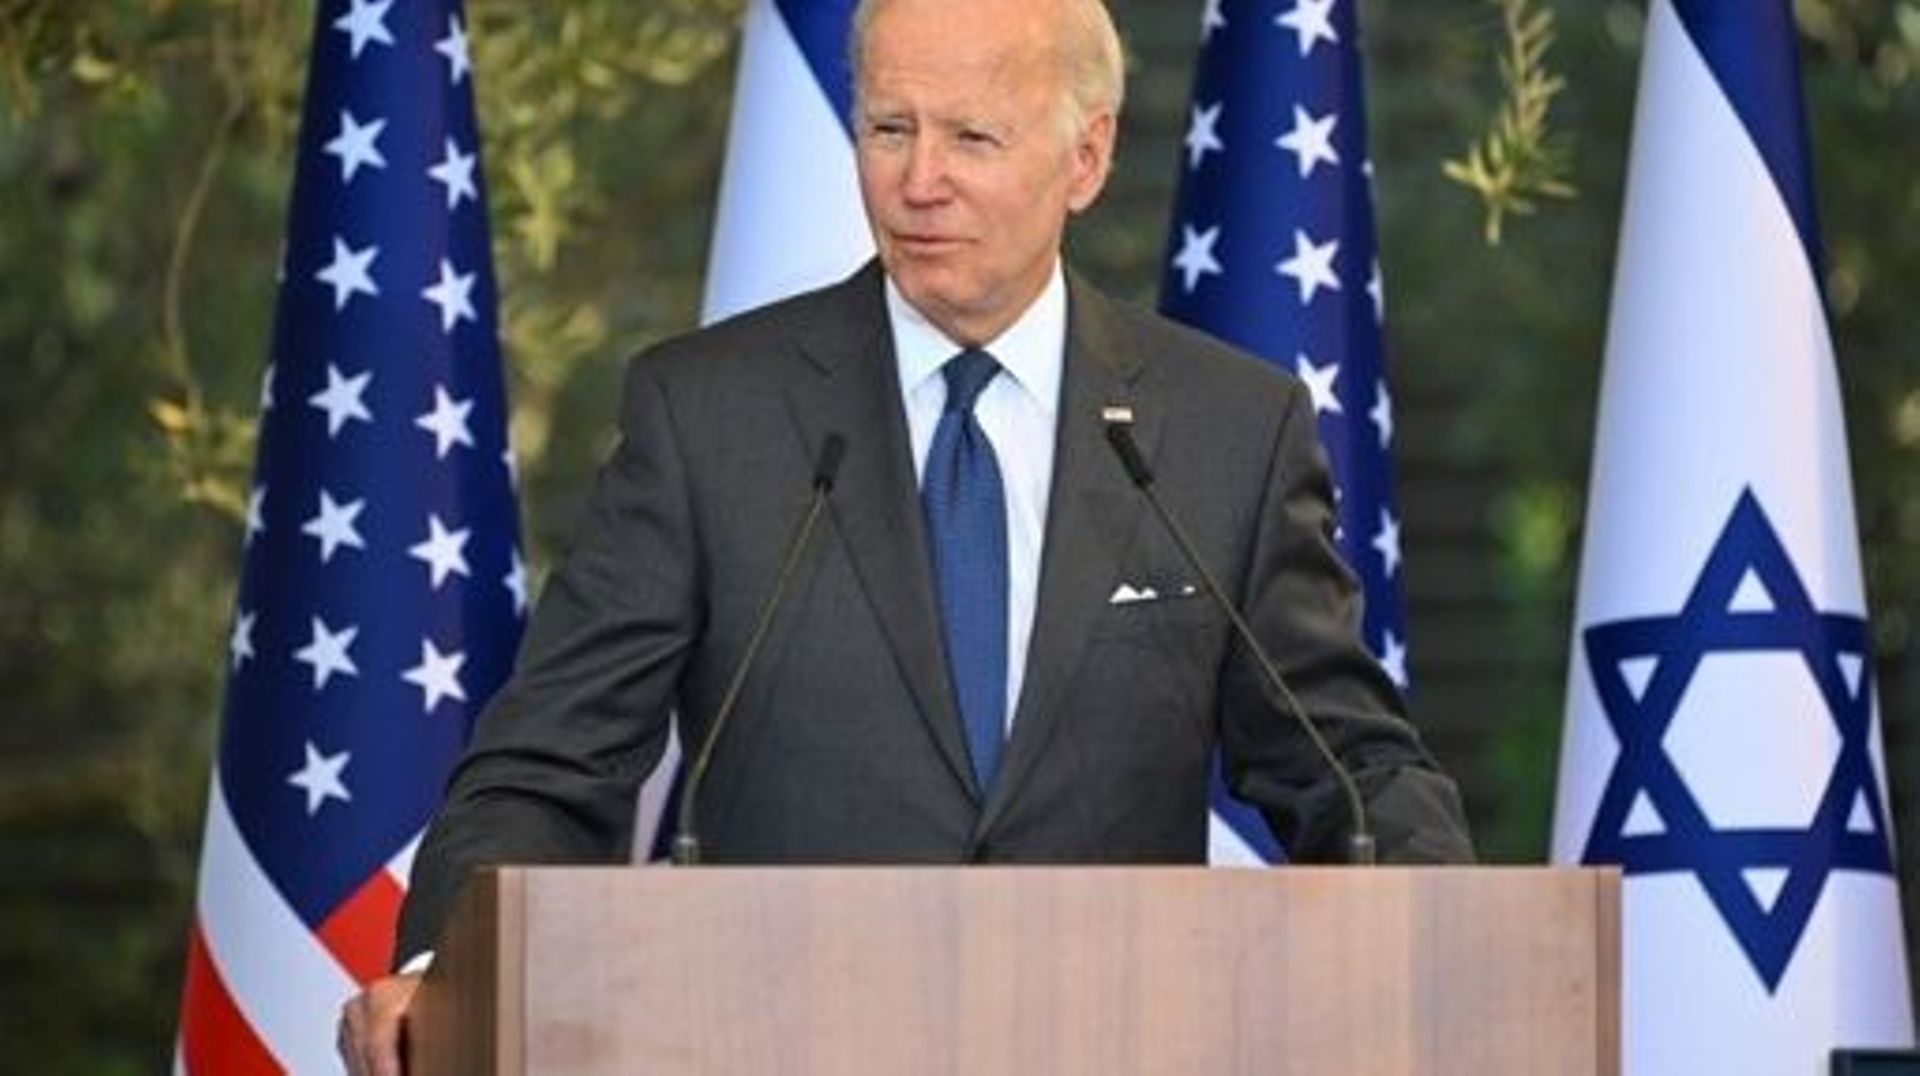 US President Joe Biden speaks before receiving the Presidential Medal of Honor from his Israeli counterpart at the Presidential residence in Jerusalem on July 14, 2022.  MANDEL NGAN / AFP